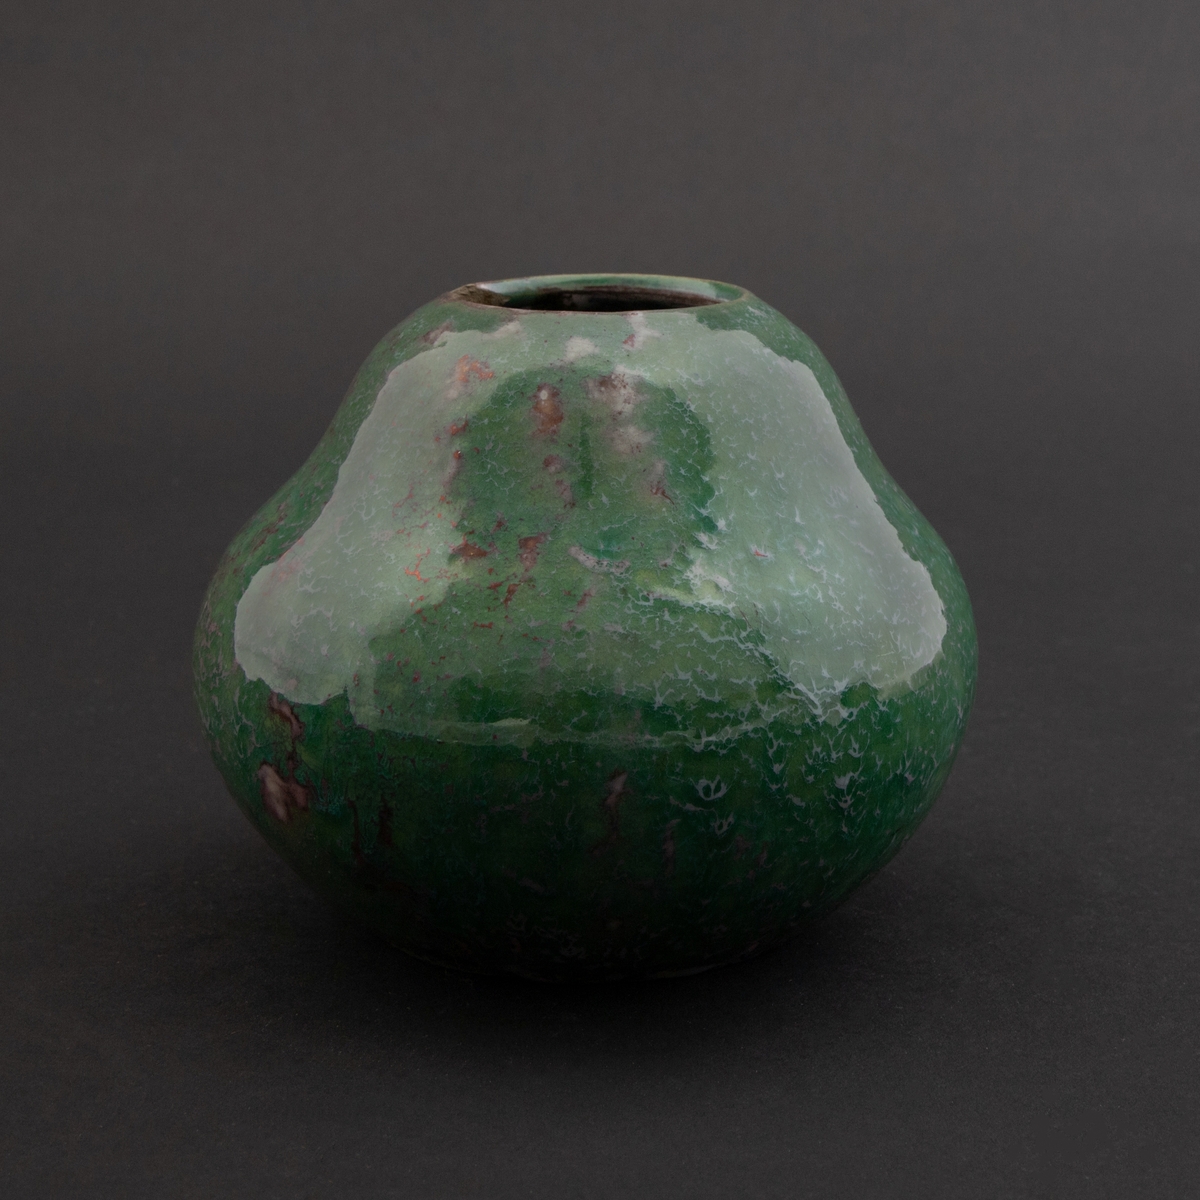 Flattrykket kalebasslignende vase med liten sirkulær åpning. Grønnfarget overflate med tidvise innslag av en mørkerød metallisk lusterglasur.